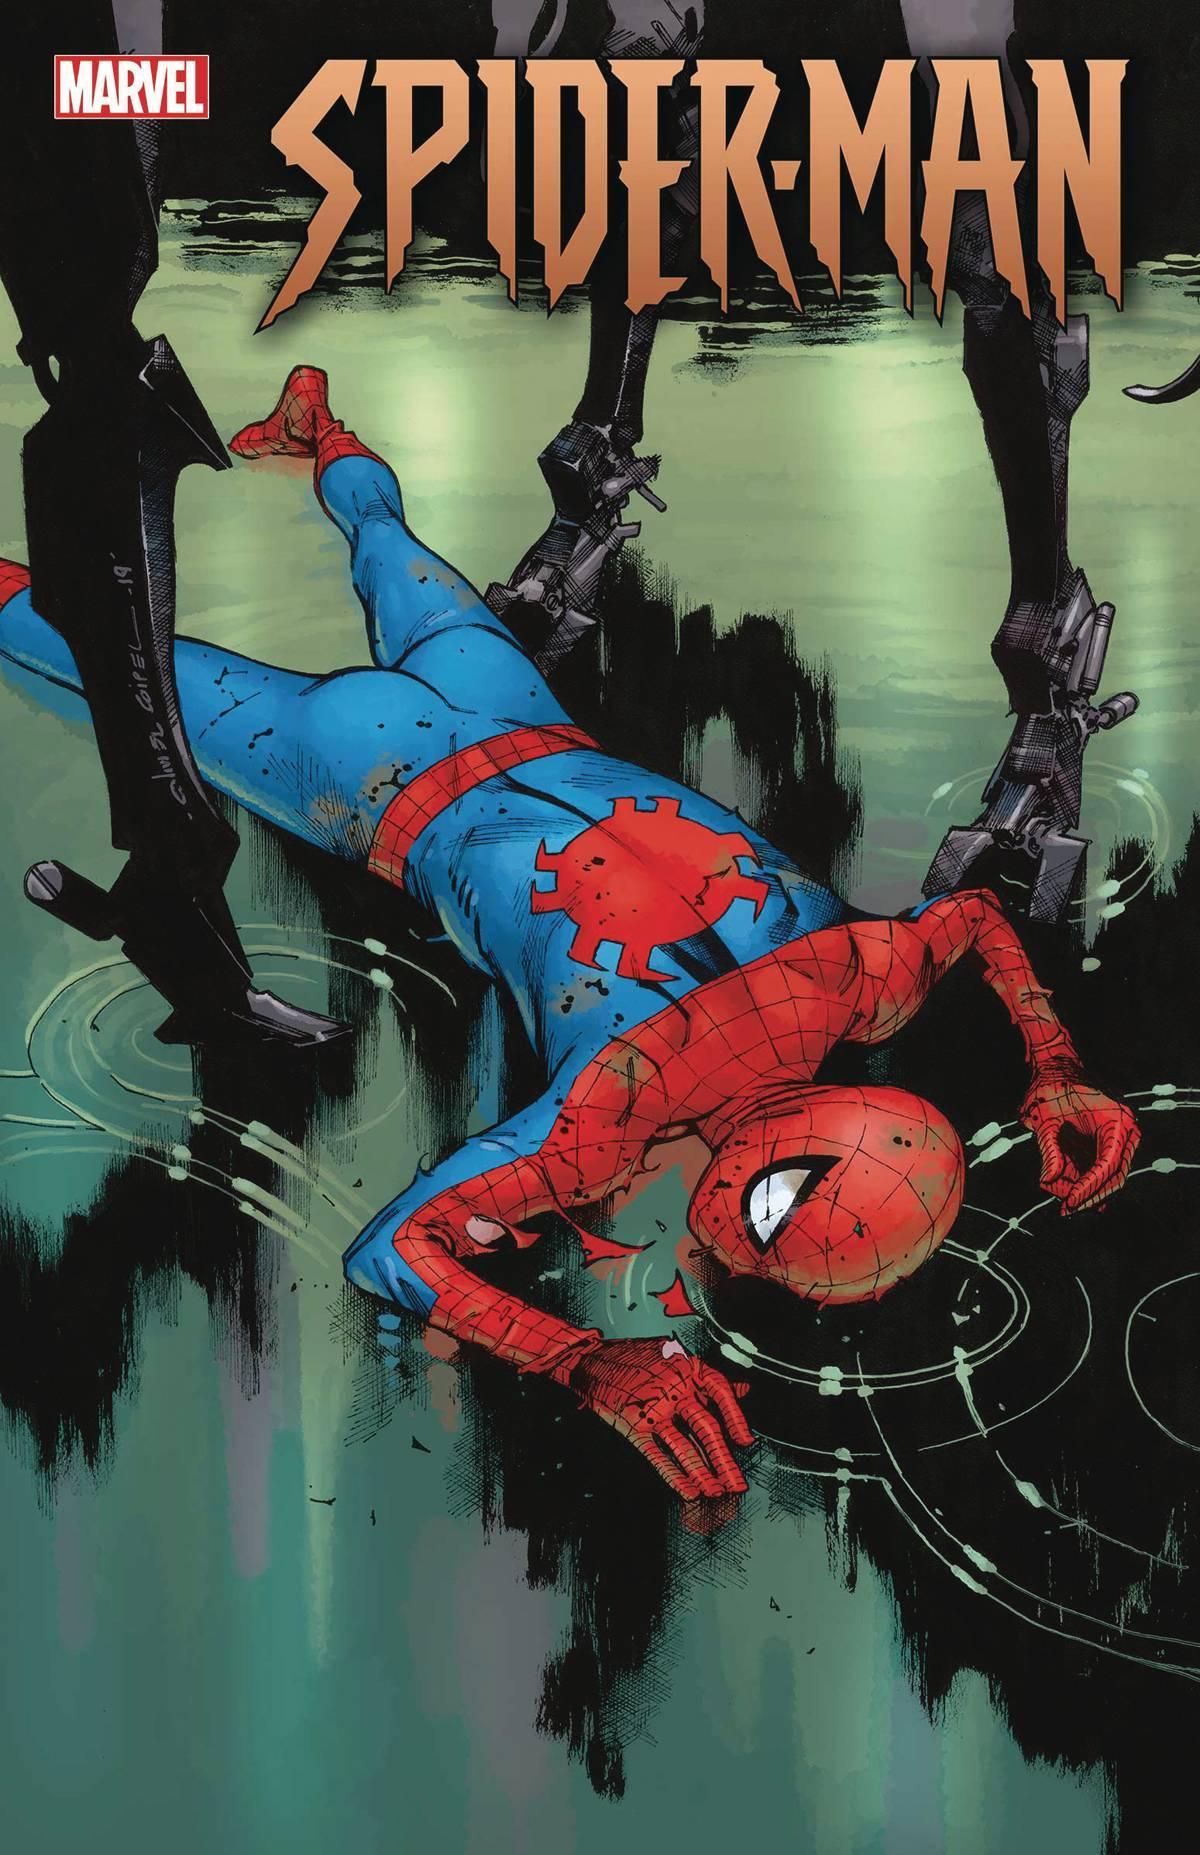 SPIDER-MAN VOL 3 (2019) #3 - Kings Comics